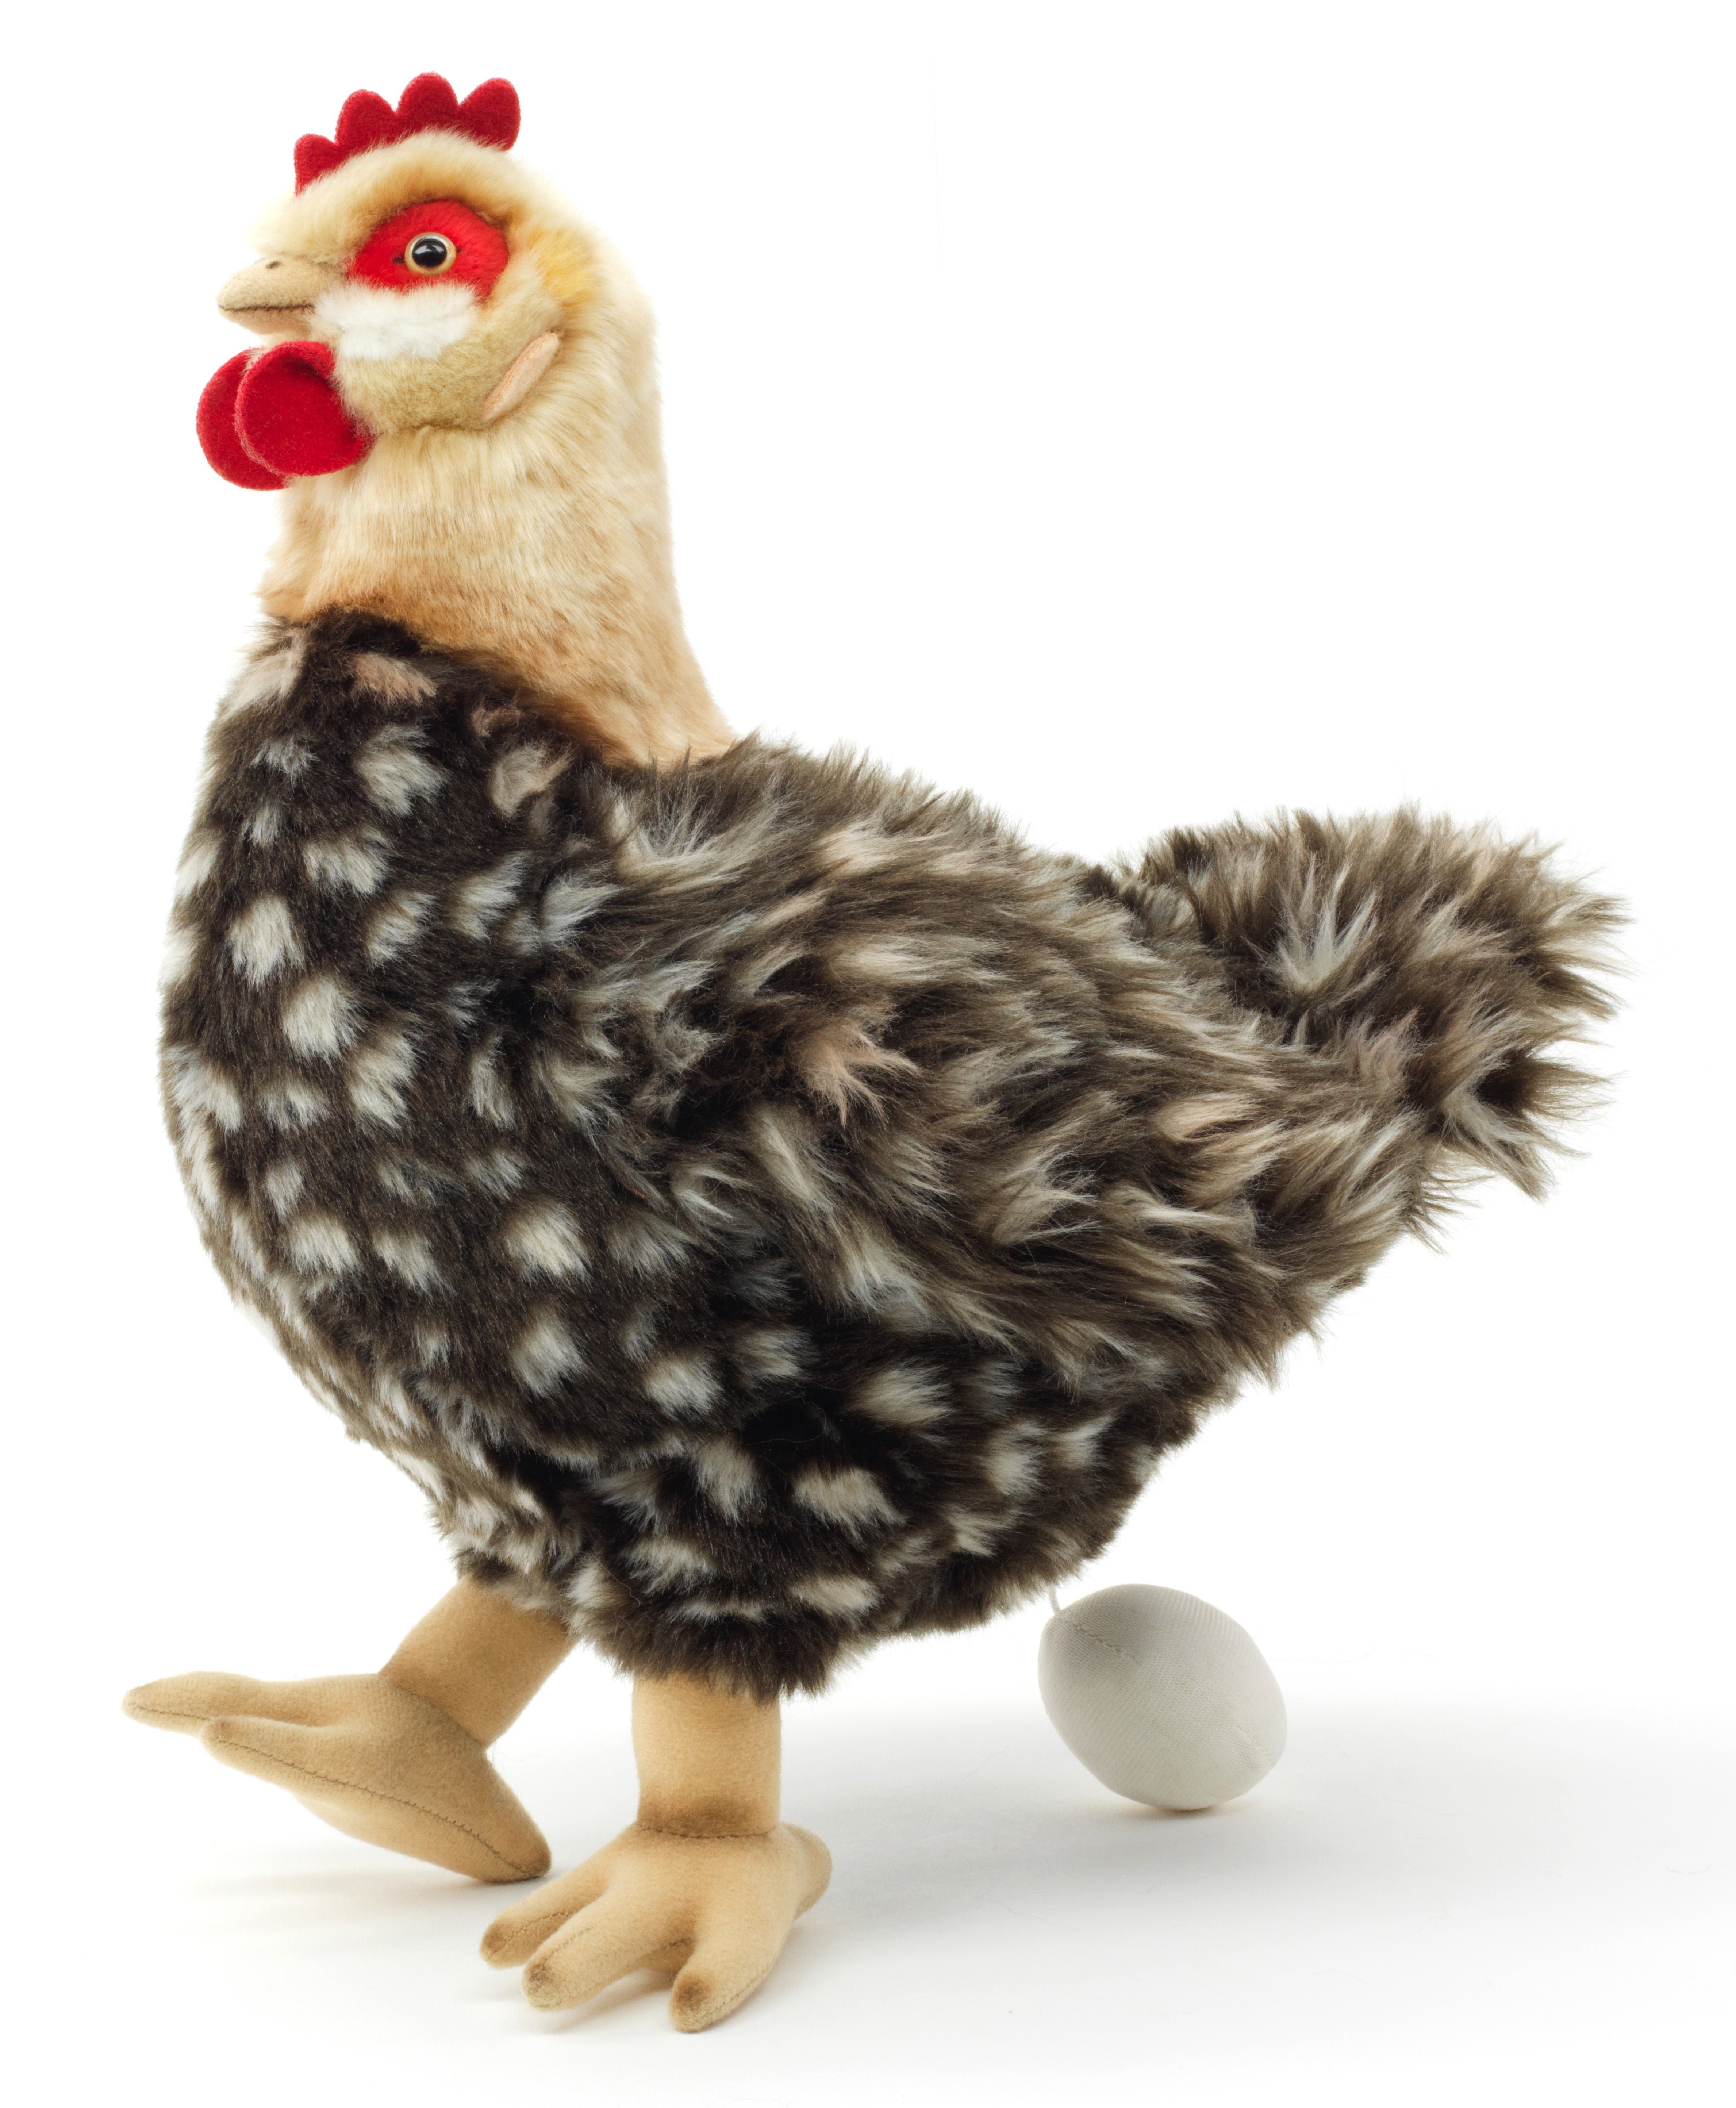 Uni-Toys Kuscheltier Henne mit Ei - versch. Farben - 37 cm (Höhe) - Plüsch-Huhn, Plüschtier, zu 100 % recyceltes Füllmaterial braun-beige